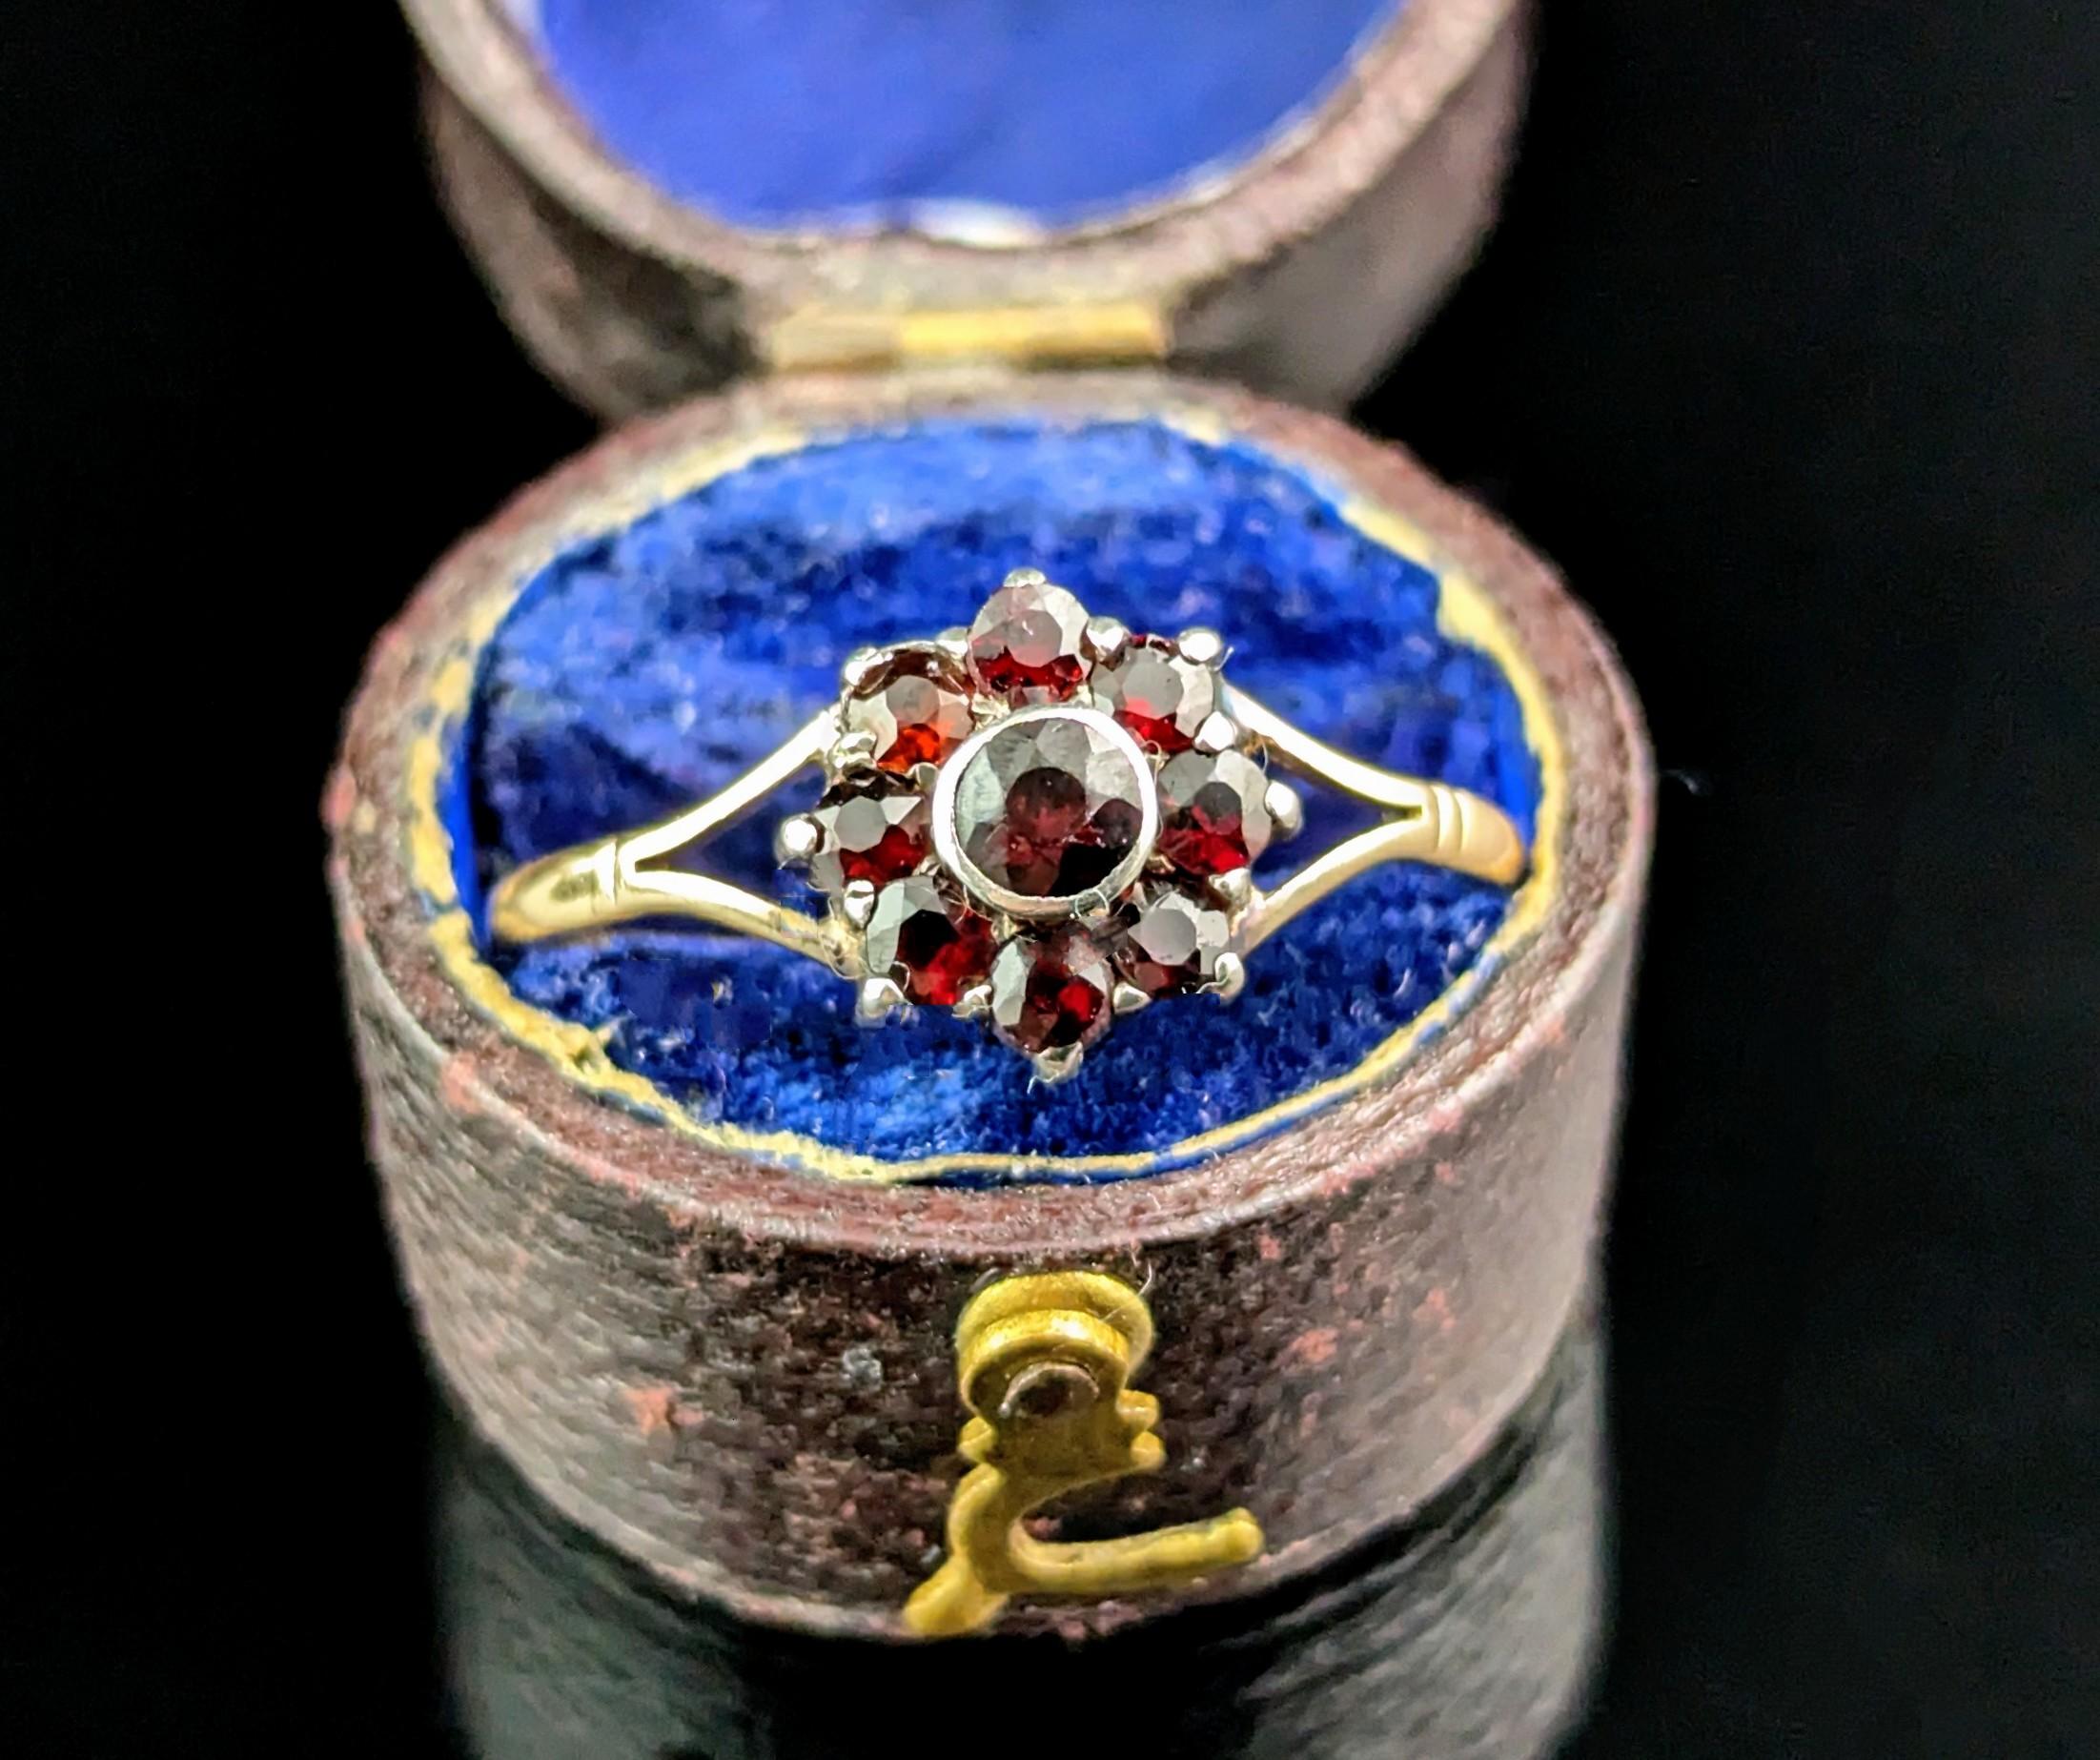 Der süßeste antike Granat-Cluster-Ring der Art-Déco-Ära.

Er ist aus 9-karätigem Gold und Silber gefertigt. Die gegabelten Schultern und das Band haben einen leicht rosafarbenen Schimmer, der auf die hübsche, blumenförmige Vorderseite mit reichen,